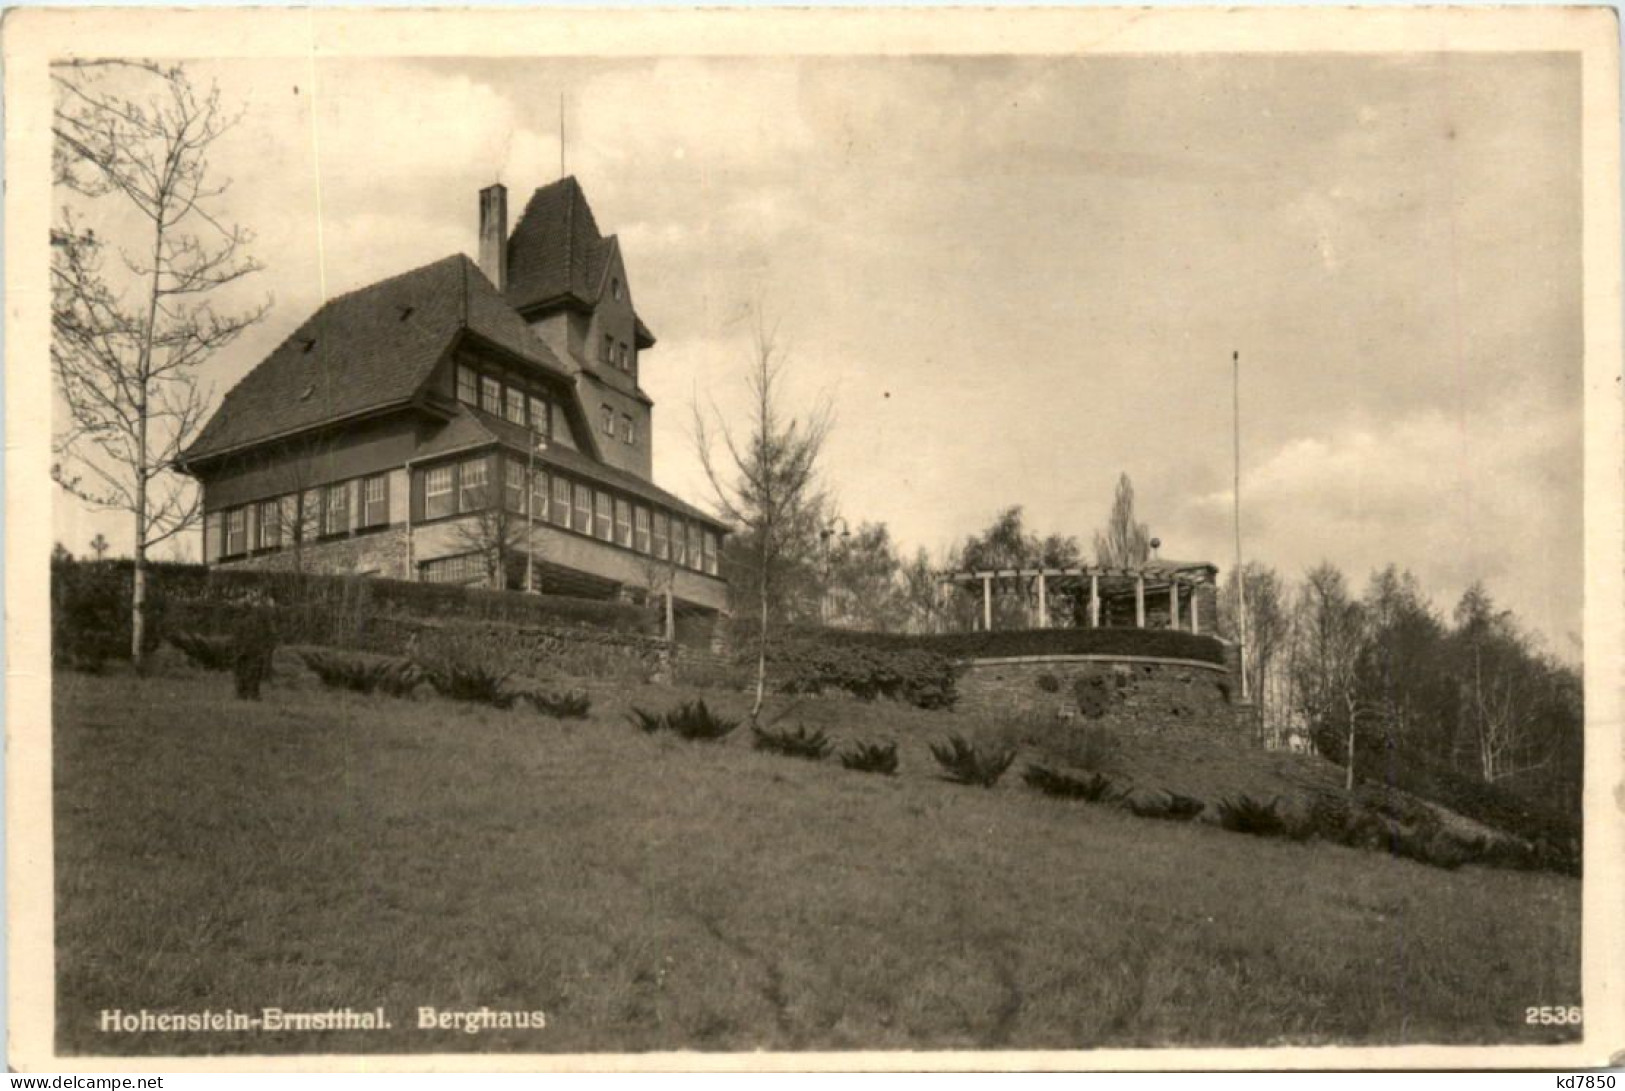 Hohenstein-Ernstthal, Berghaus - Hohenstein-Ernstthal